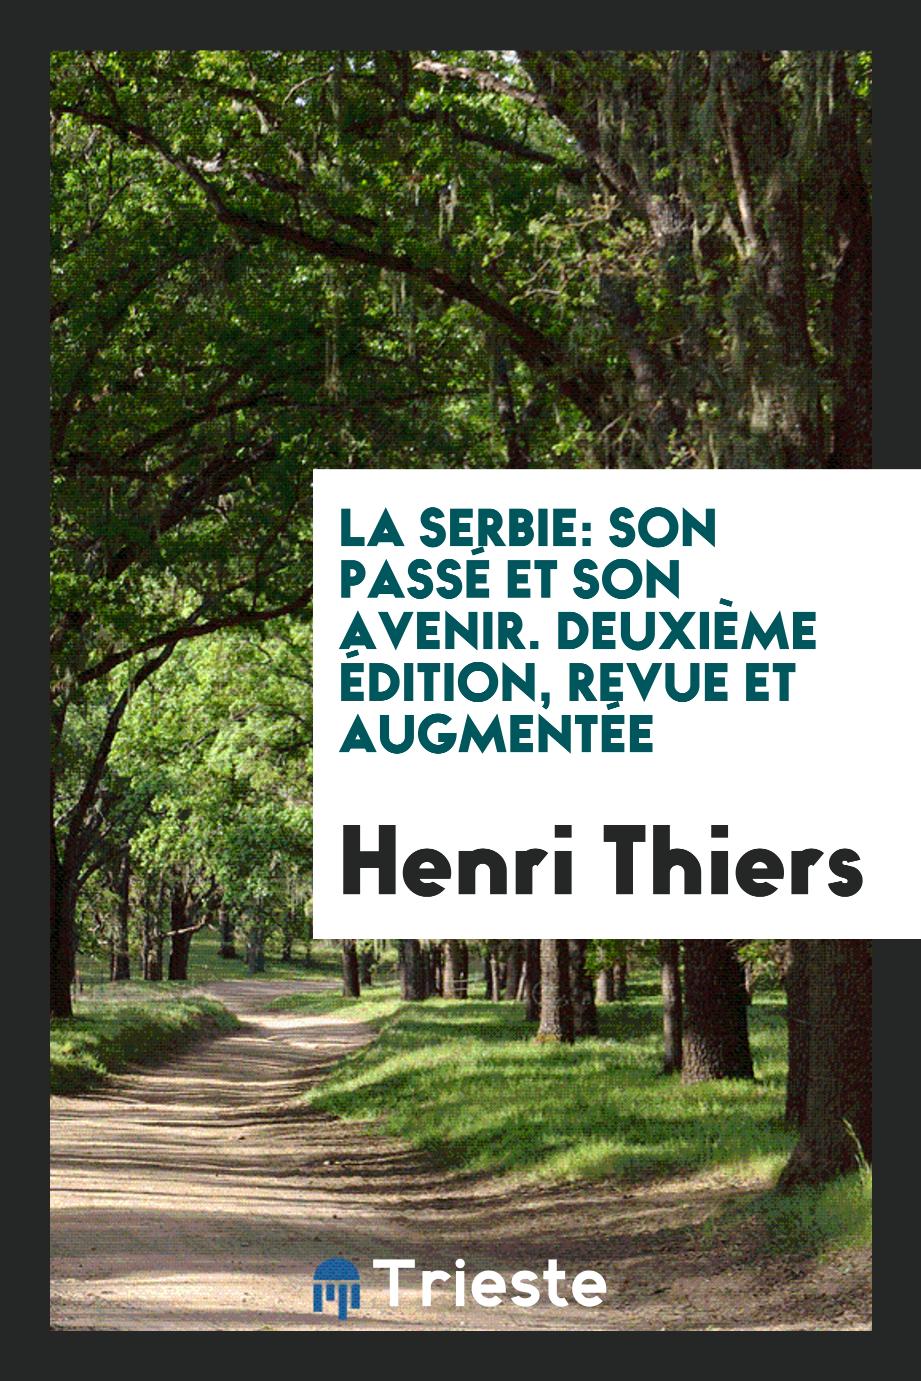 Henri Thiers - La Serbie: Son Passé et Son Avenir. Deuxième Édition, Revue et Augmentée